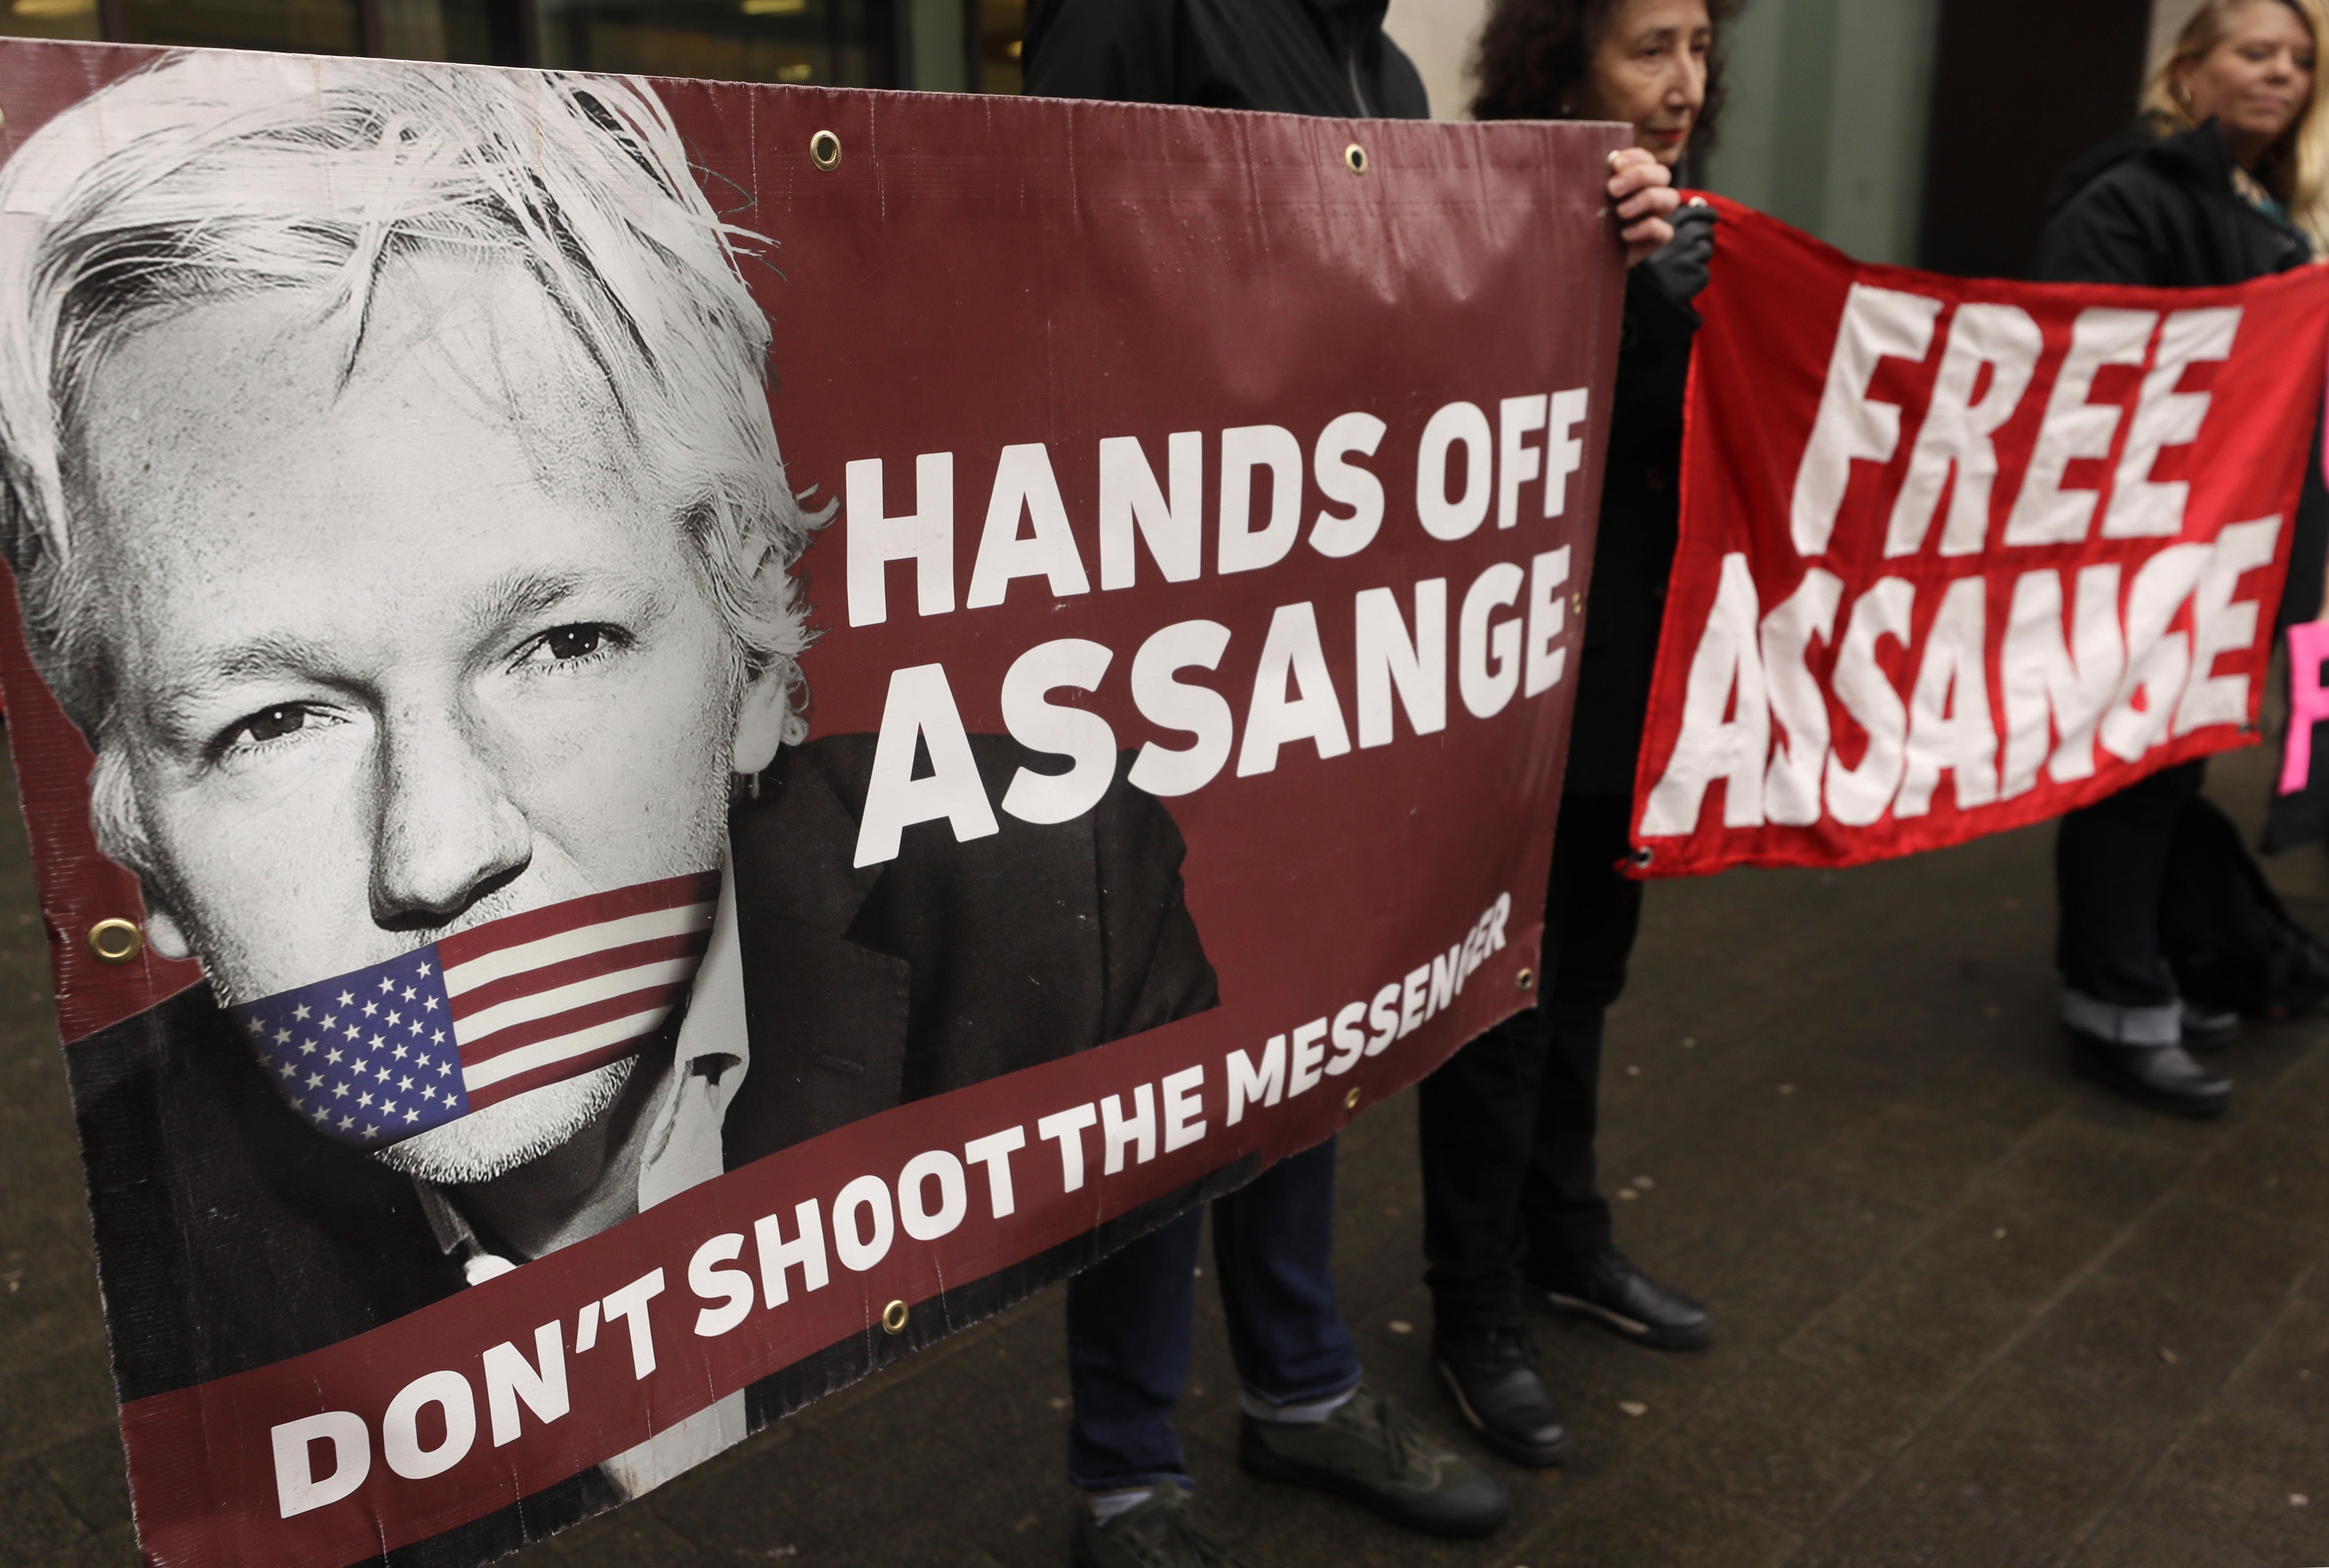 Trumptan Assangea rüşvet teklifi